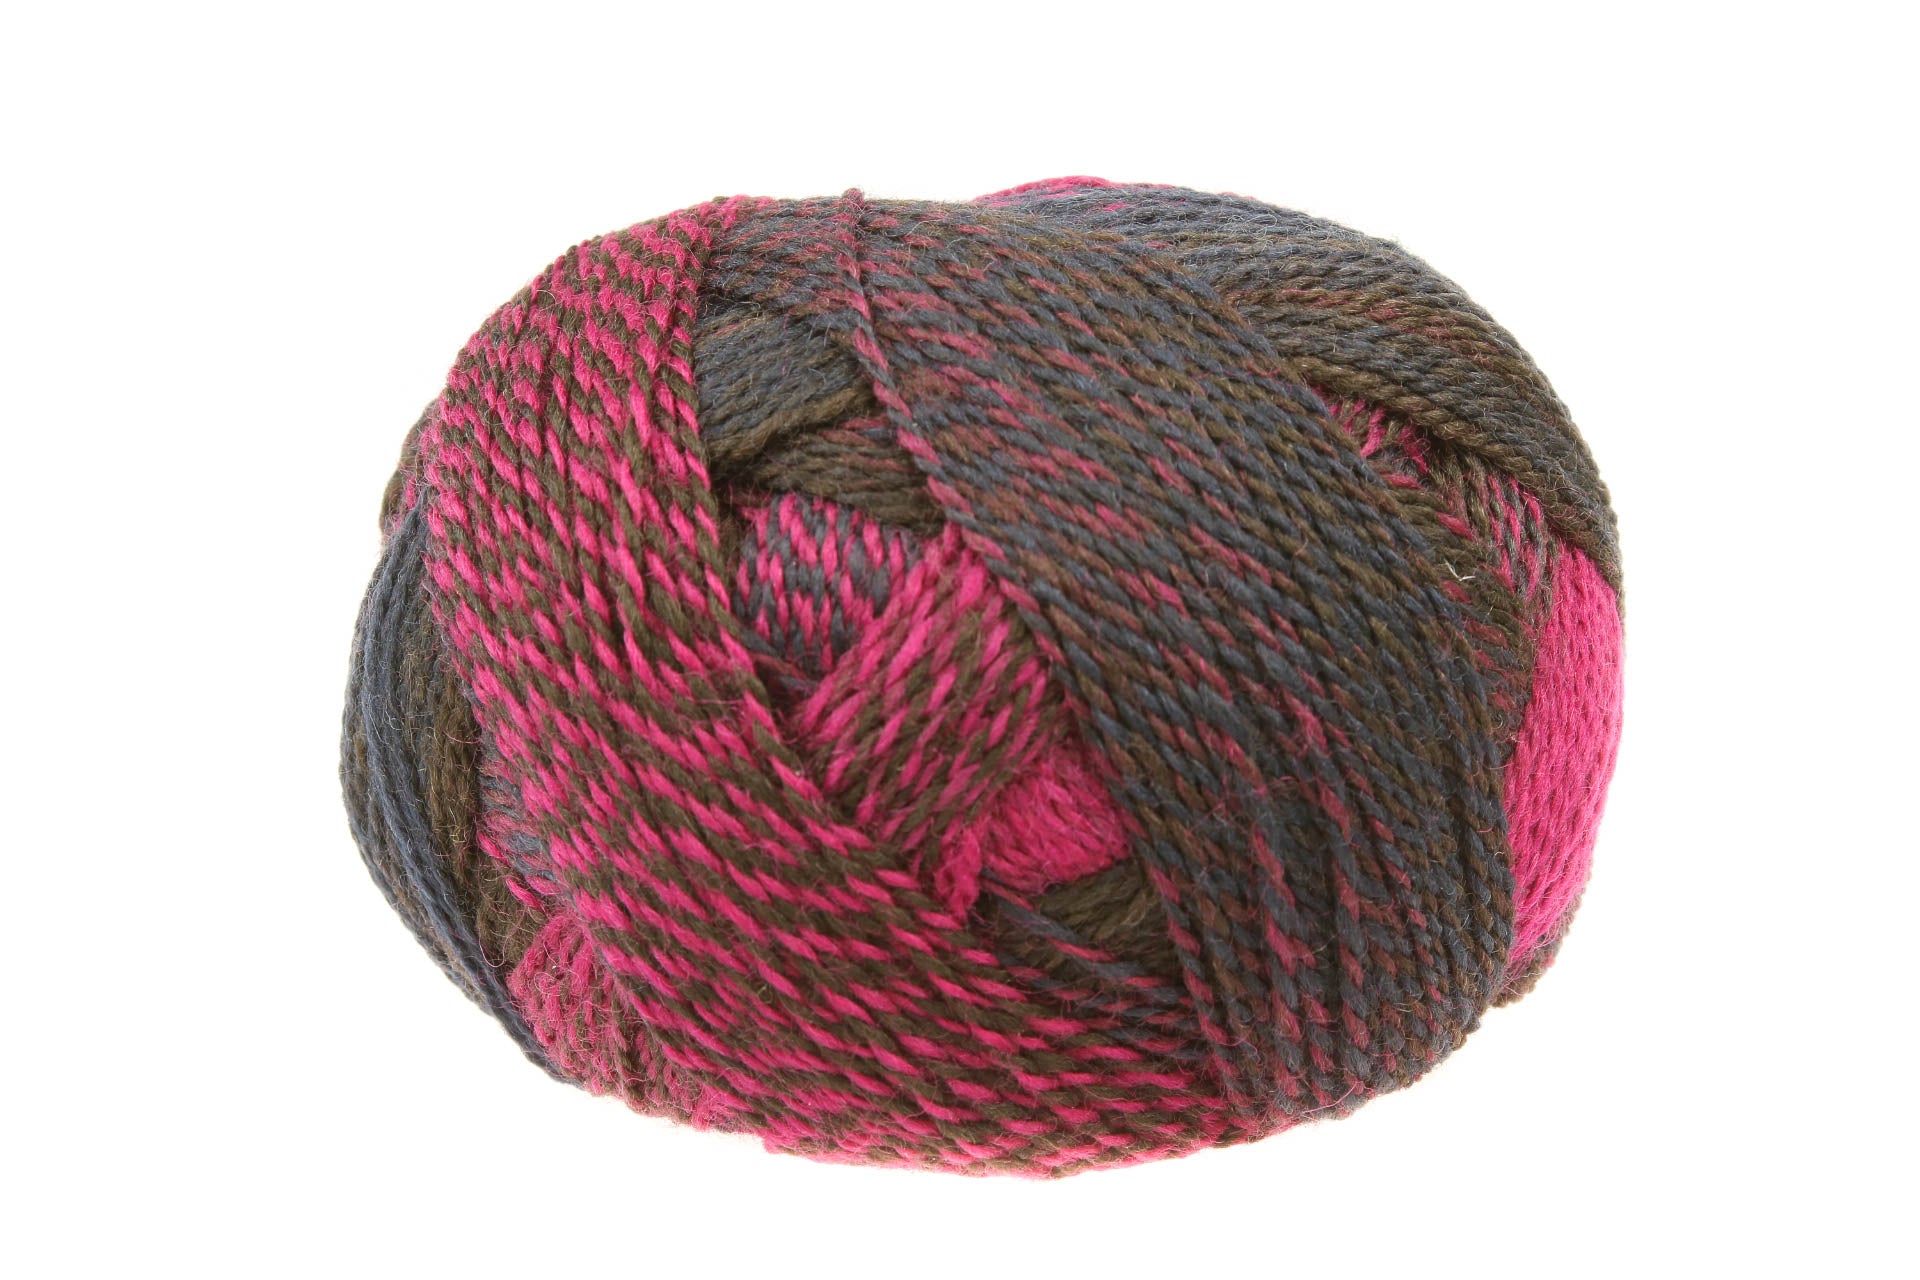 Zauberball Crazy Yarn - Magenta/ Purple/ Red (# 2095)